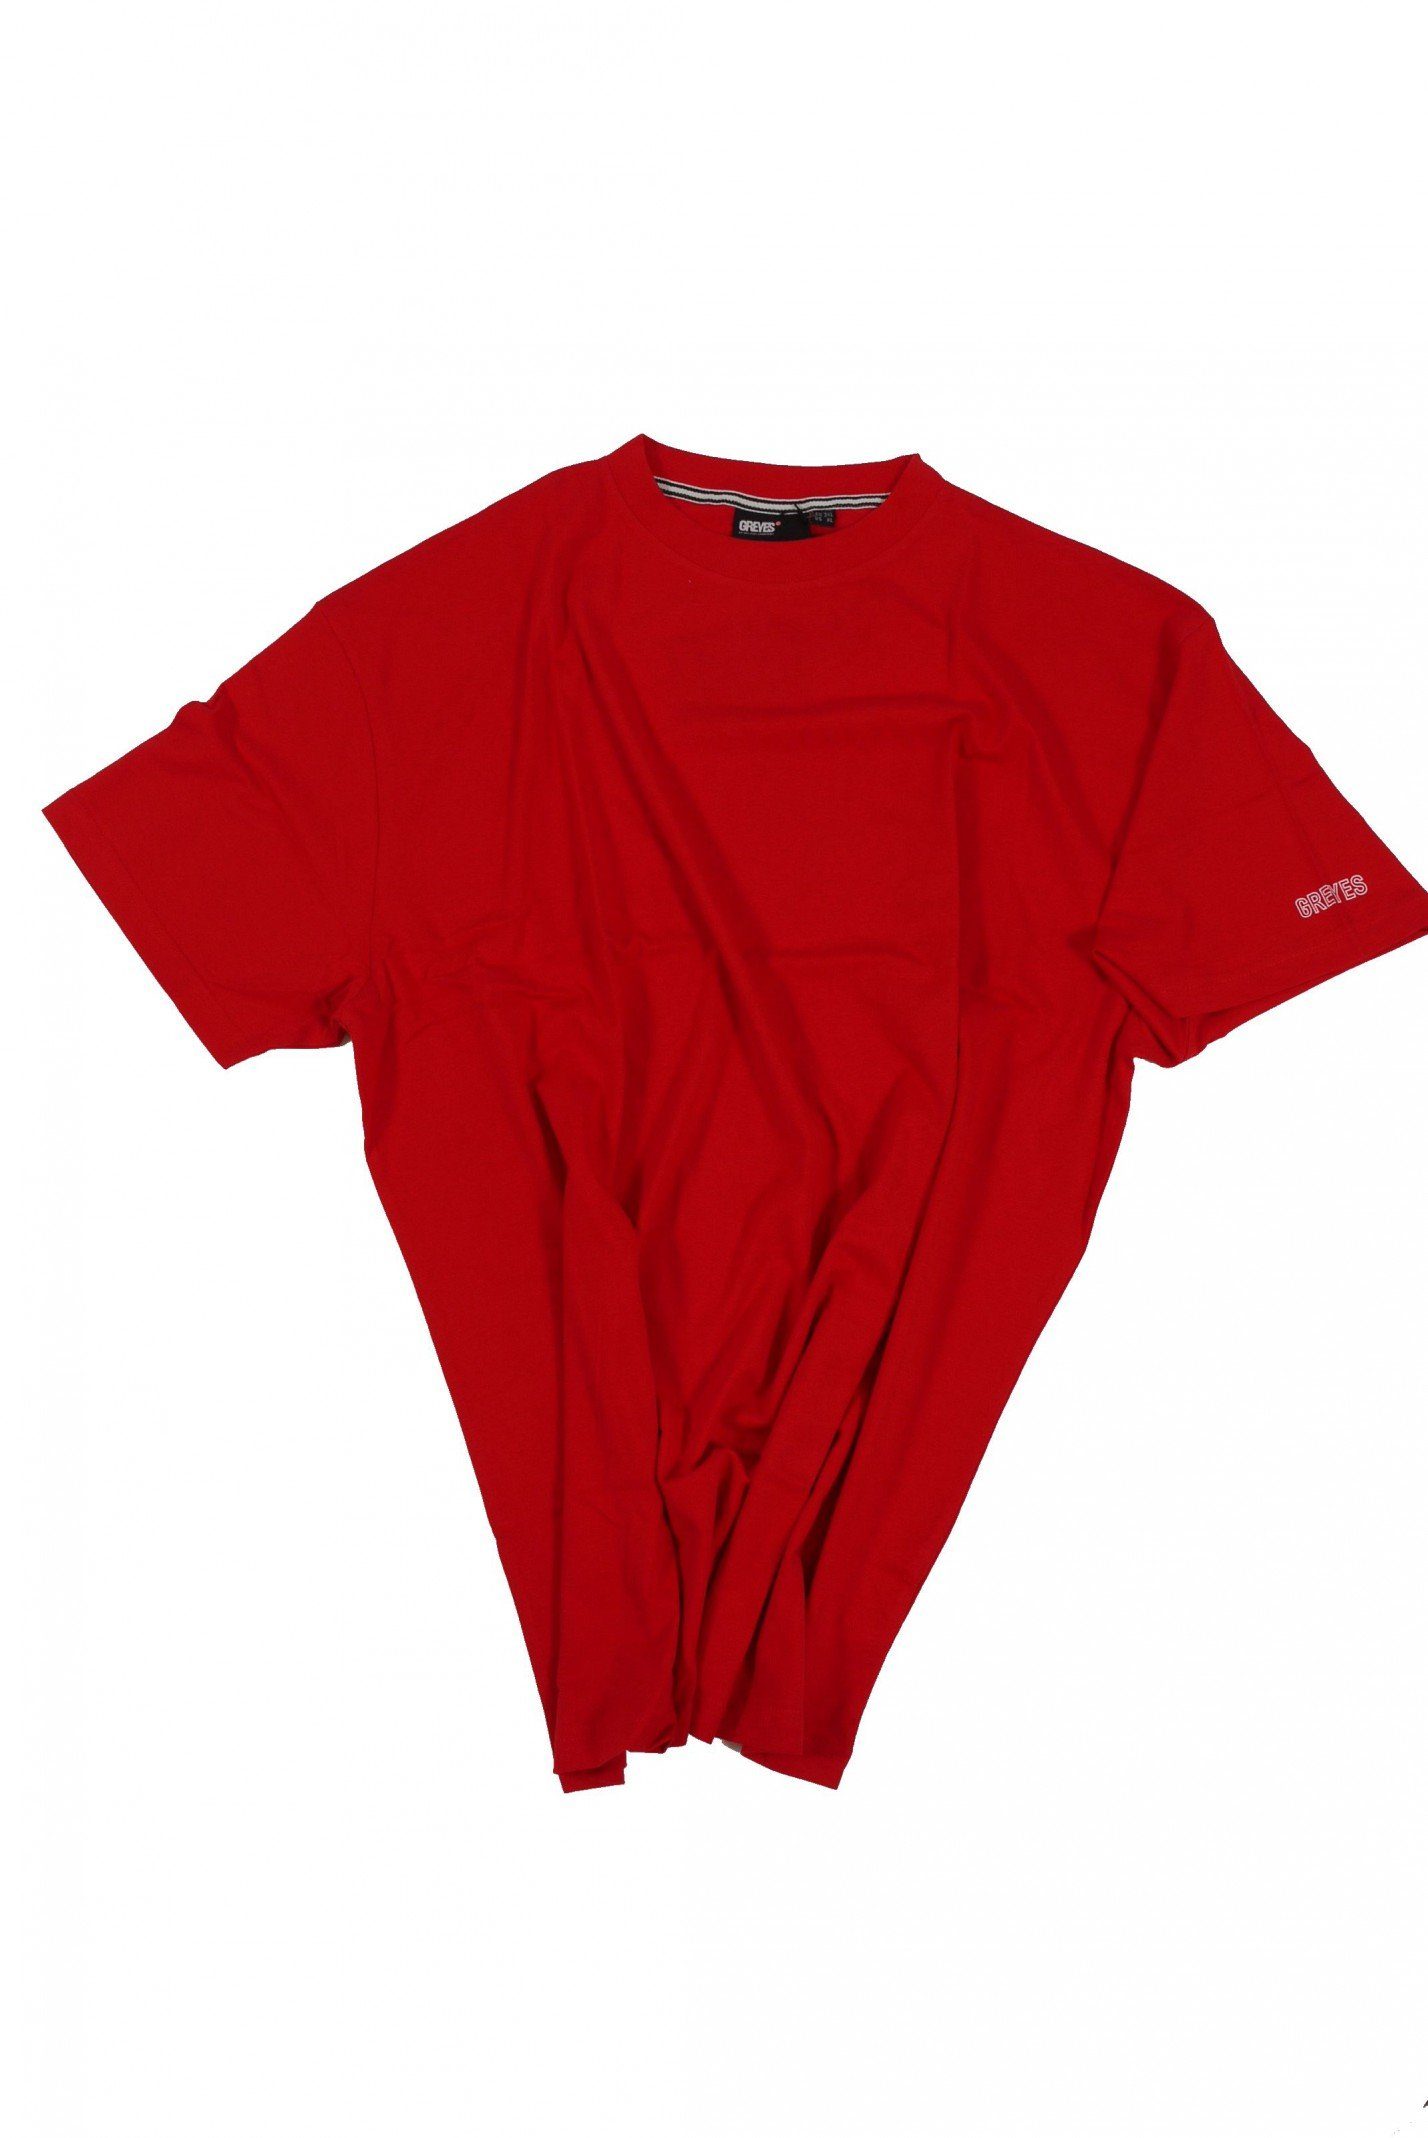 north 56 4 T-Shirt T-Shirt von Allsize in Herrenübergröße bis 8XL, rot